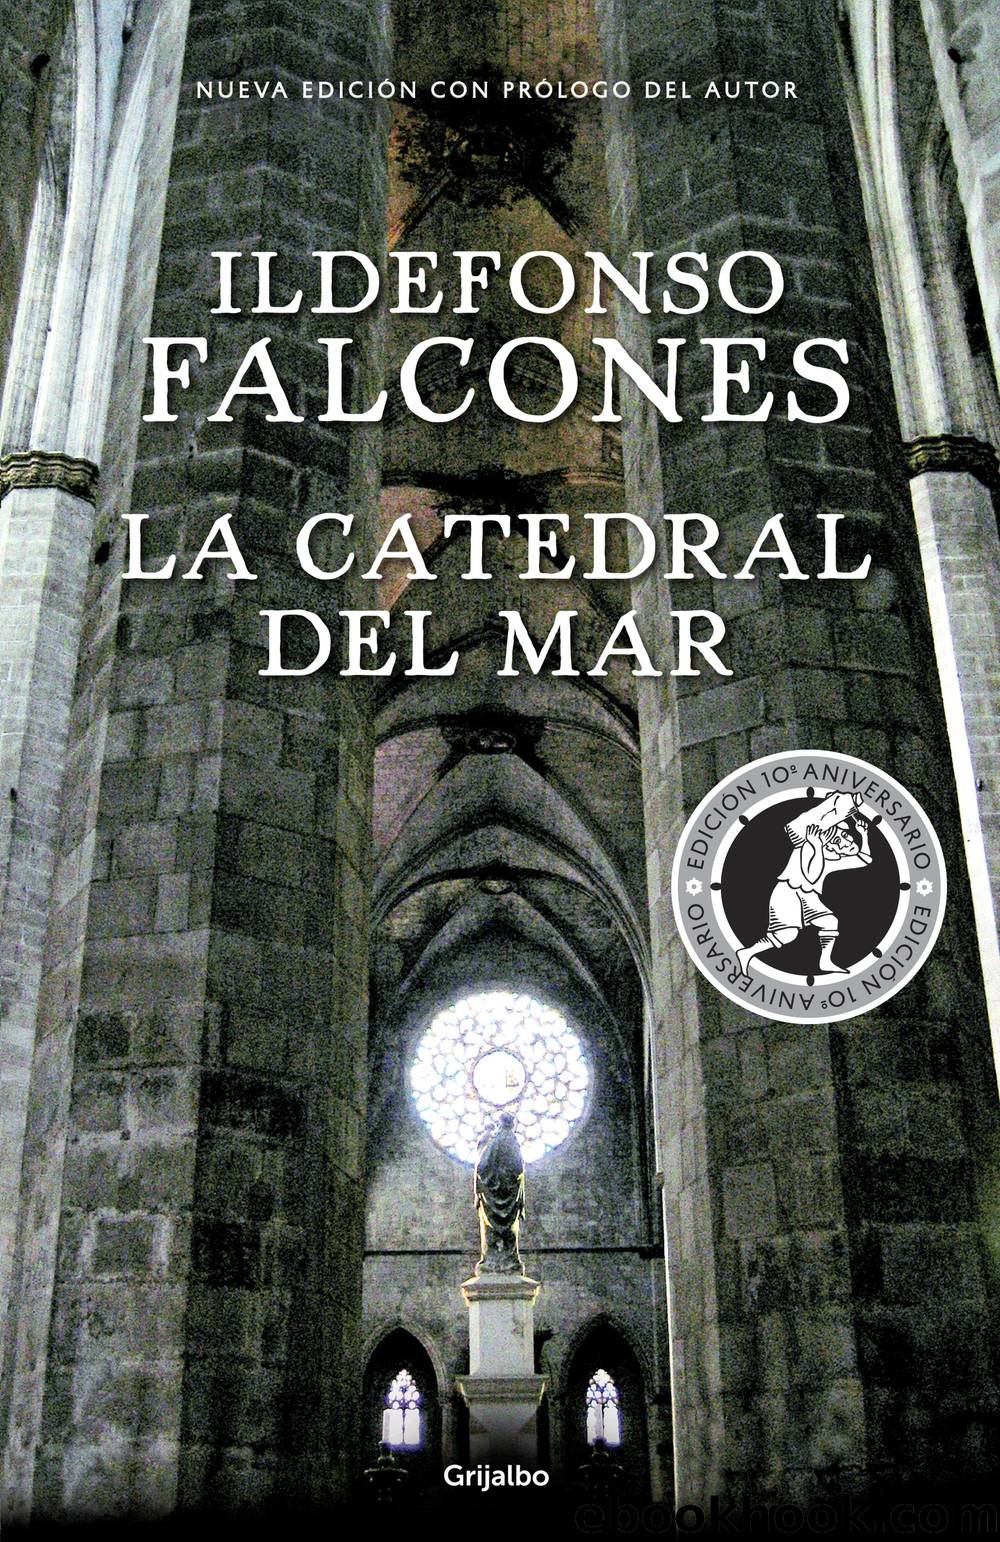 La catedral del mar (ediciÃ³n conmemorativa 10Âº aniversario) (Spanish Edition) by Ildefonso Falcones